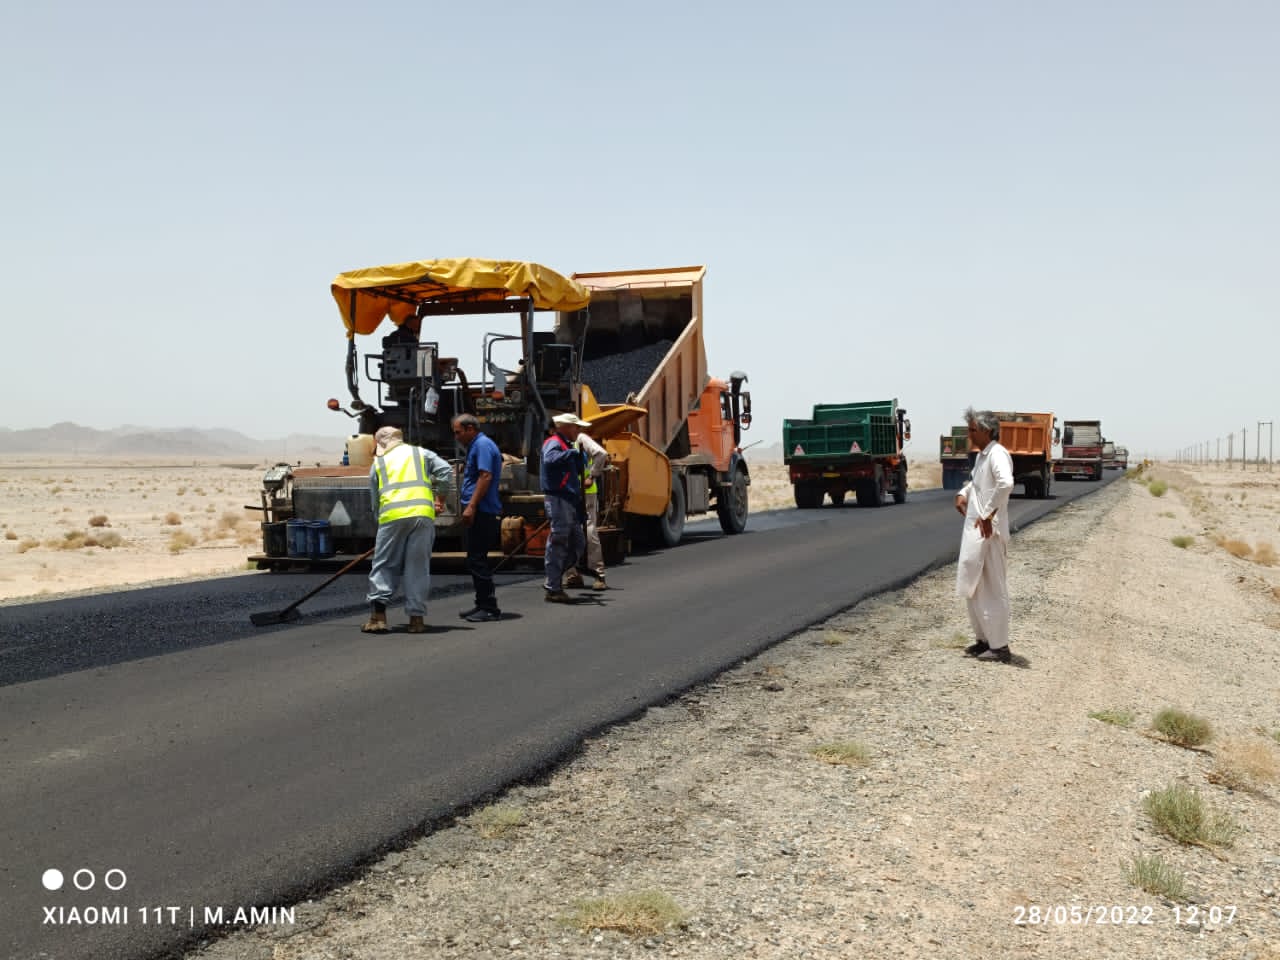 کسب رتبه برتر در روکش آسفالت جاده ای توسط اداره کل راهداری و حمل و نقل جاده ای سیستان و بلوچستان  